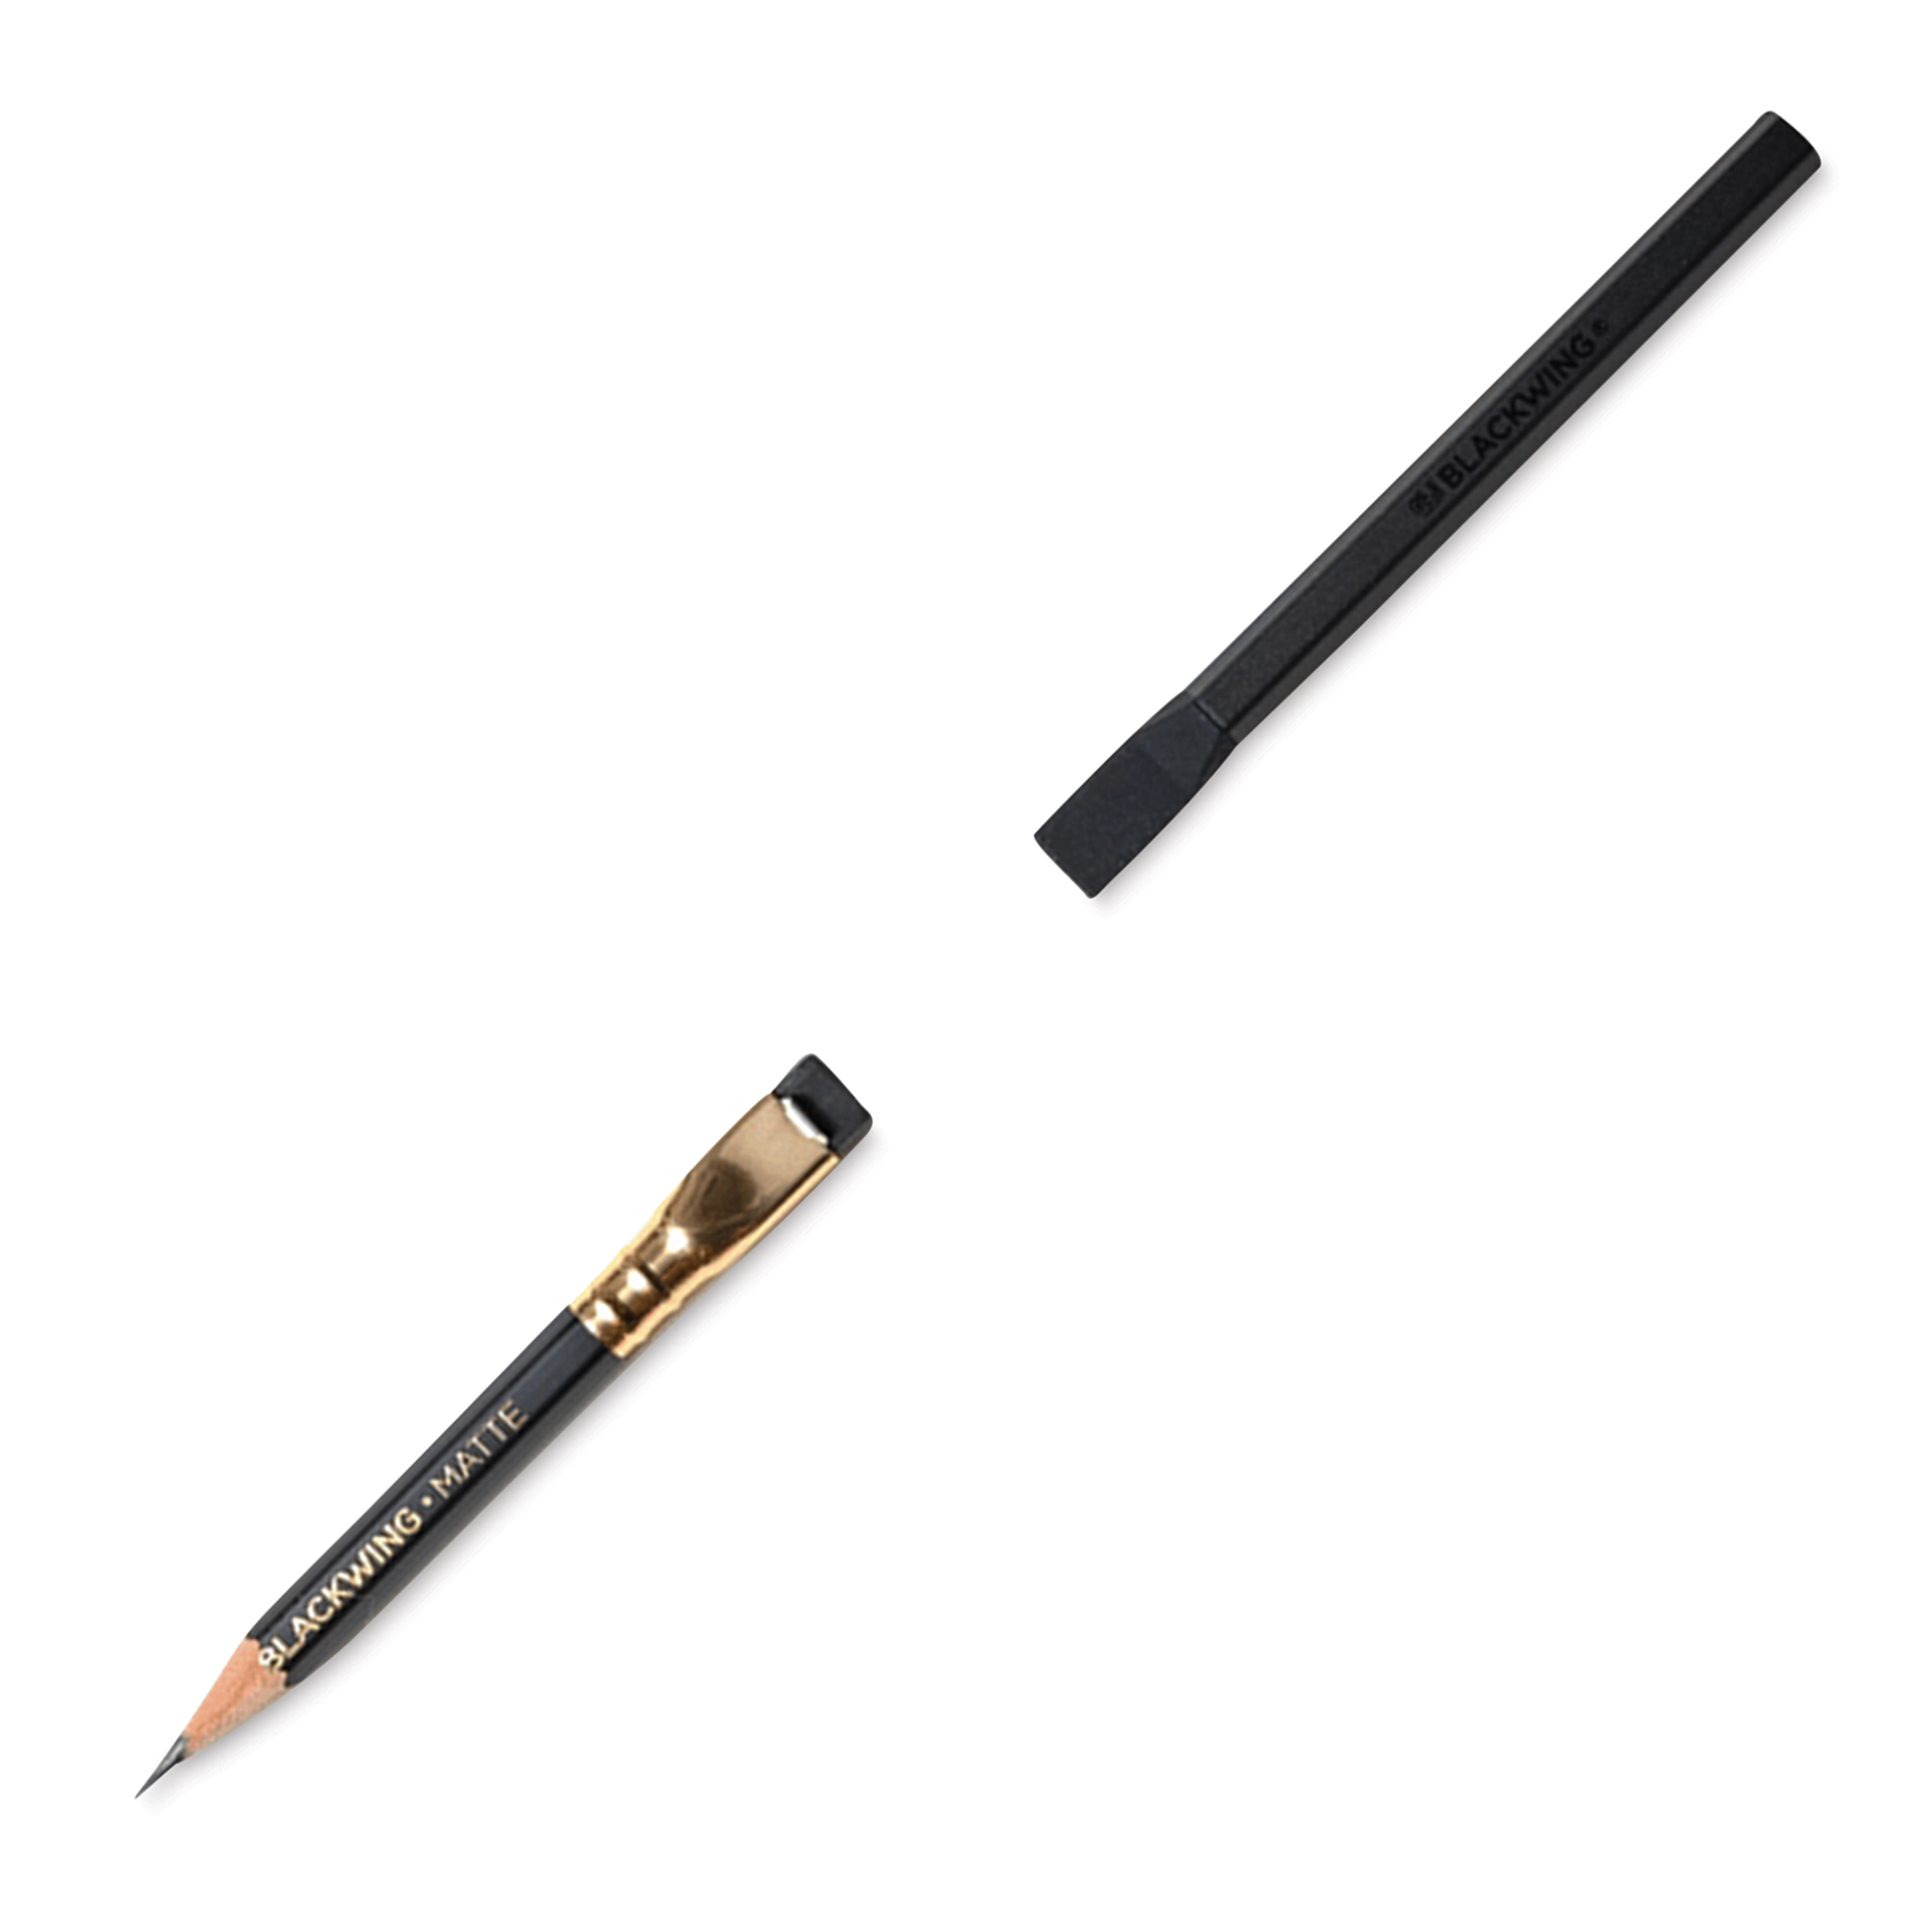 Blackwing] Pencil Extender – Baum-kuchen